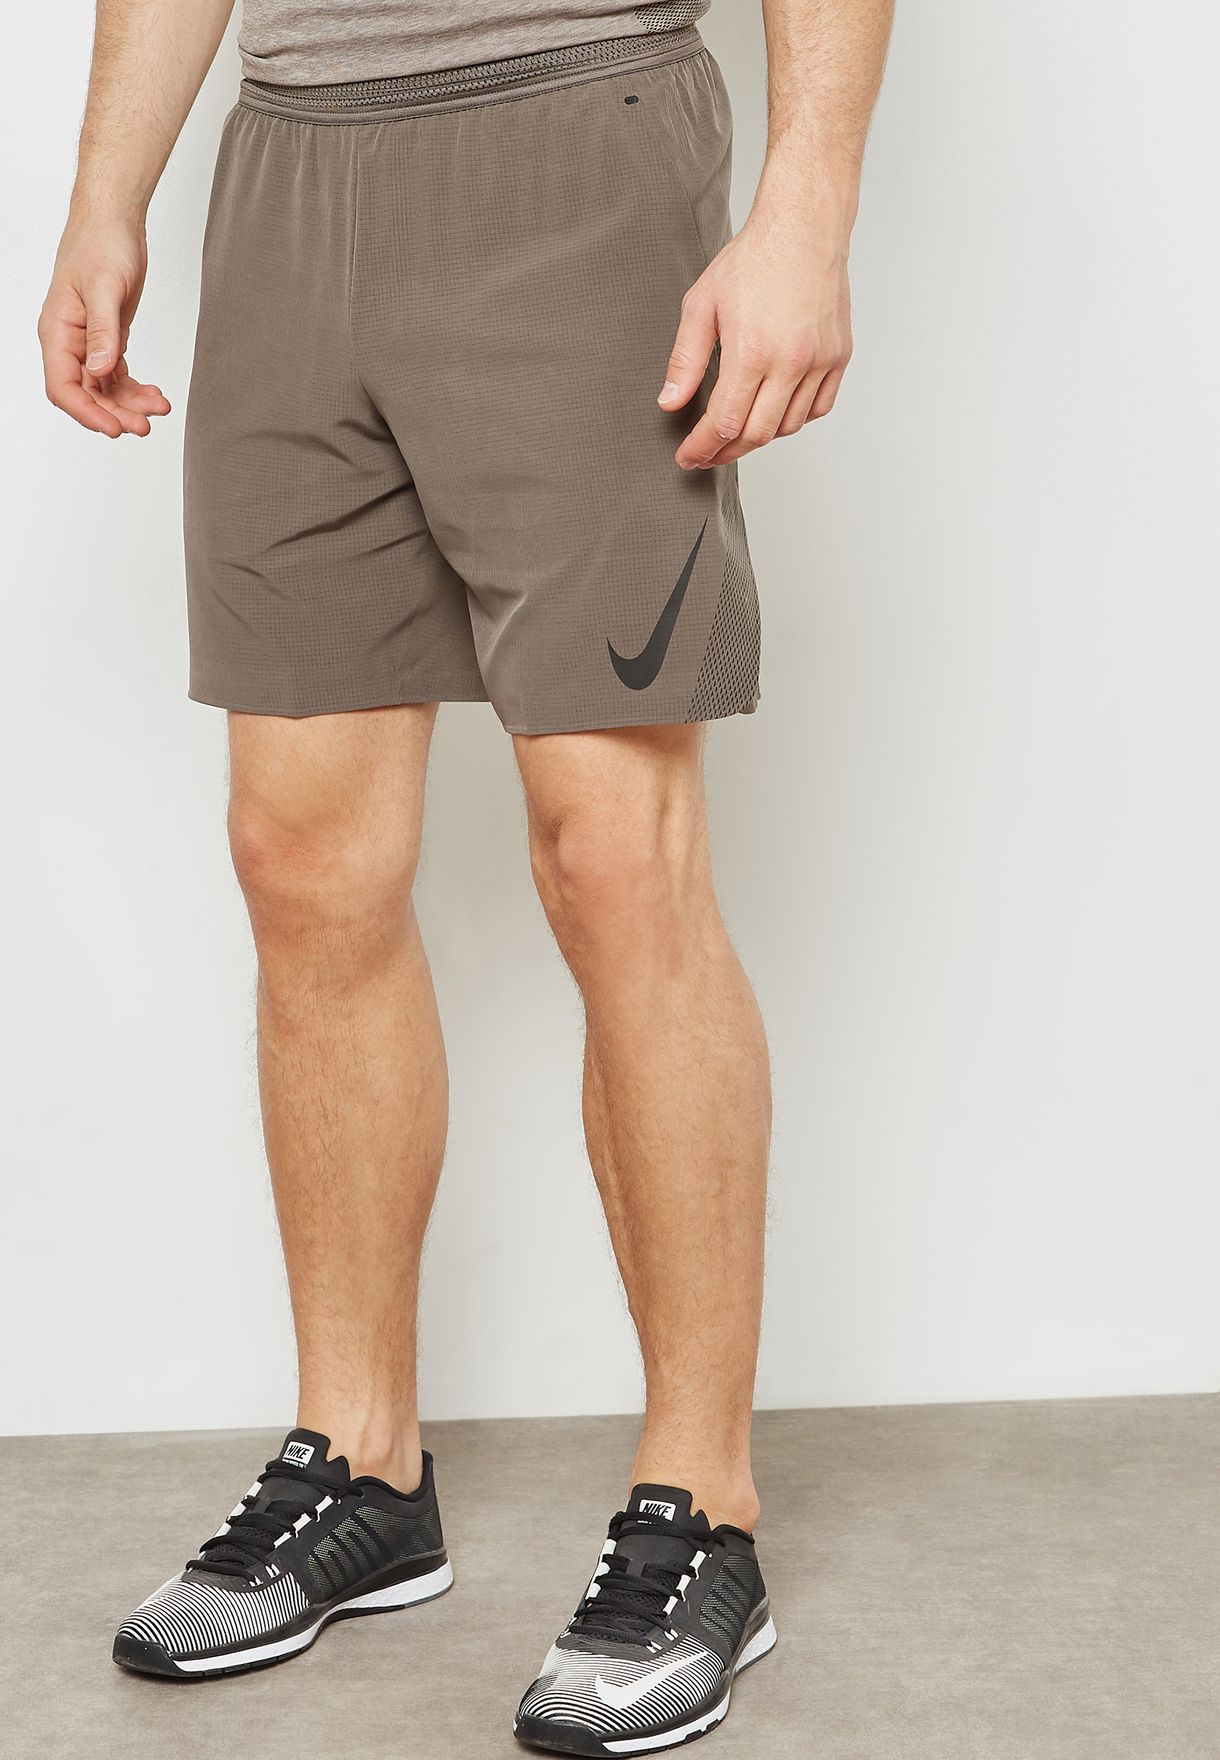 nike men's flex repel shorts